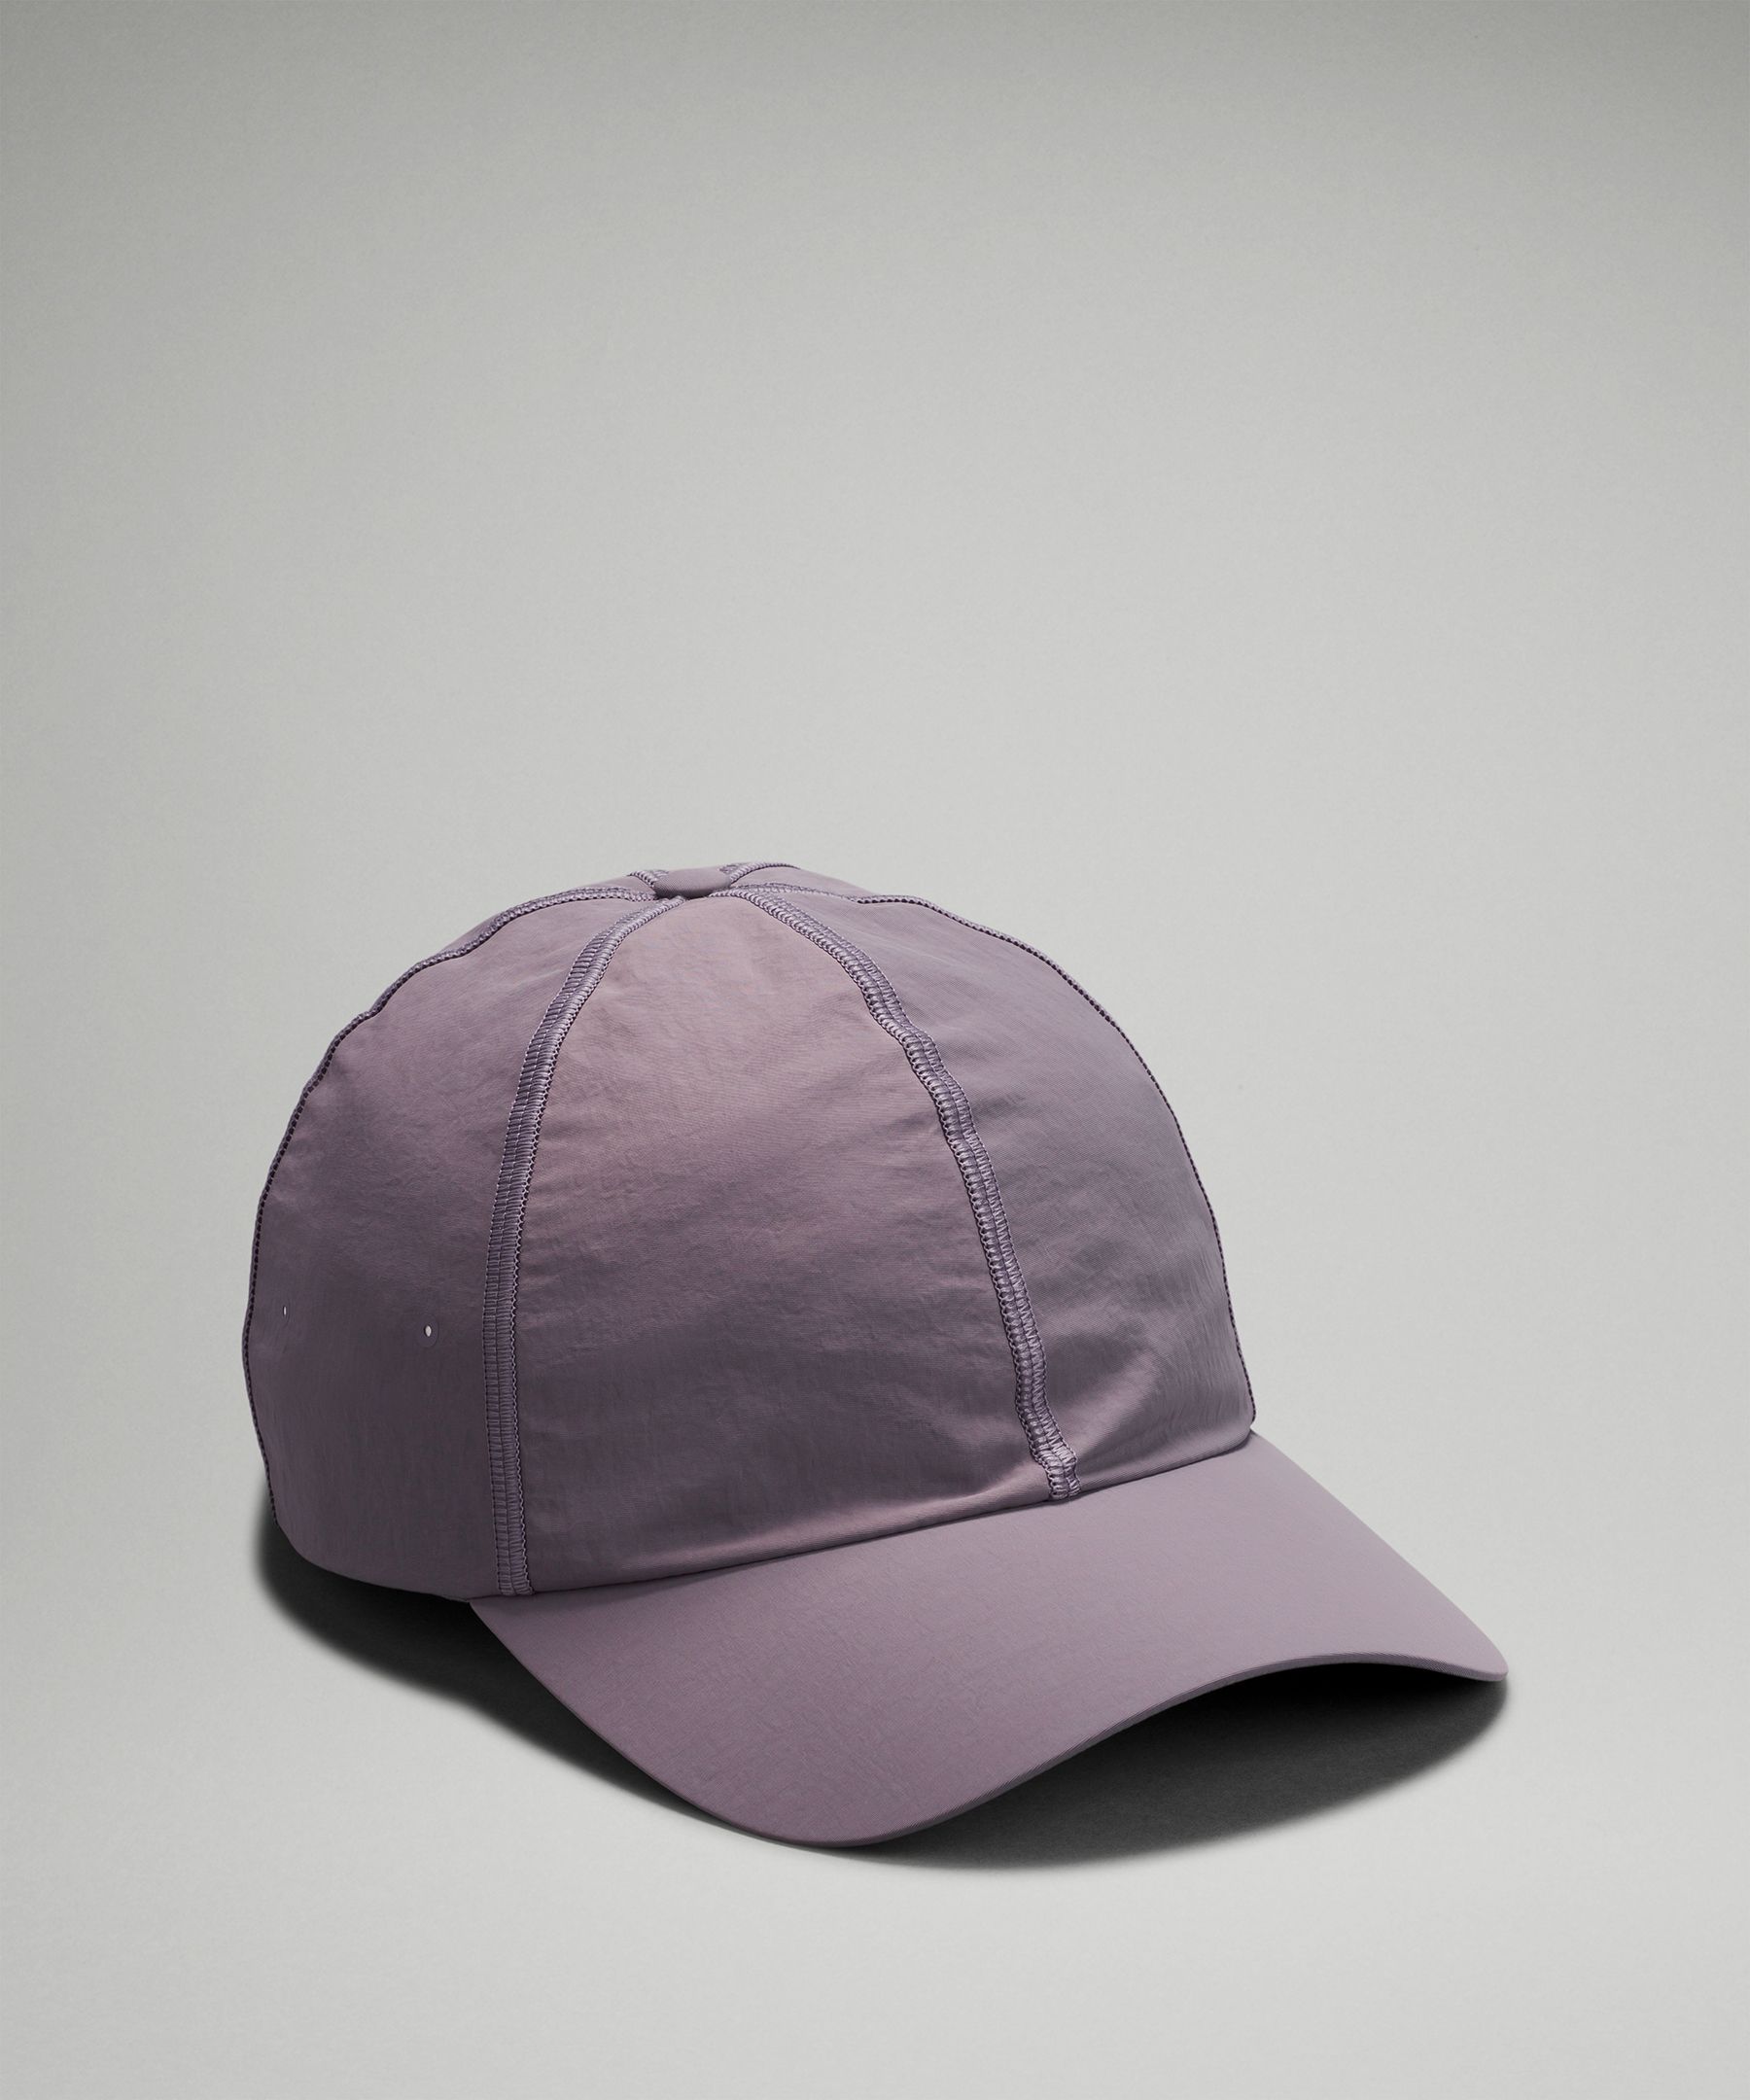 Lululemon Baller Hat Soft In Dusky Lavender